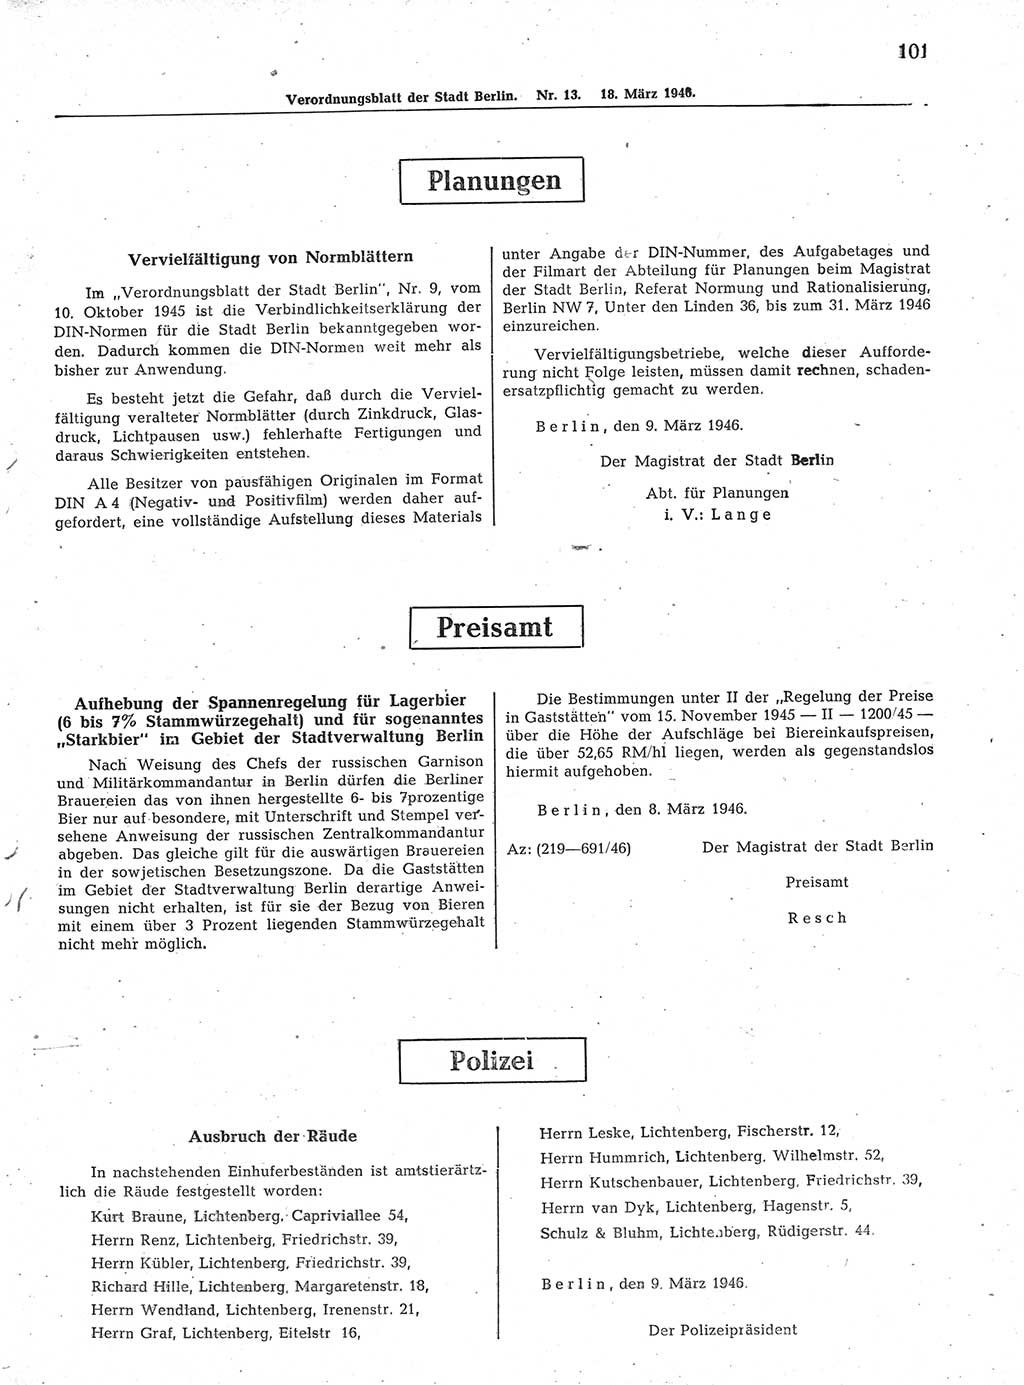 Verordnungsblatt (VOBl.) der Stadt Berlin, für Groß-Berlin 1946, Seite 101 (VOBl. Bln. 1946, S. 101)